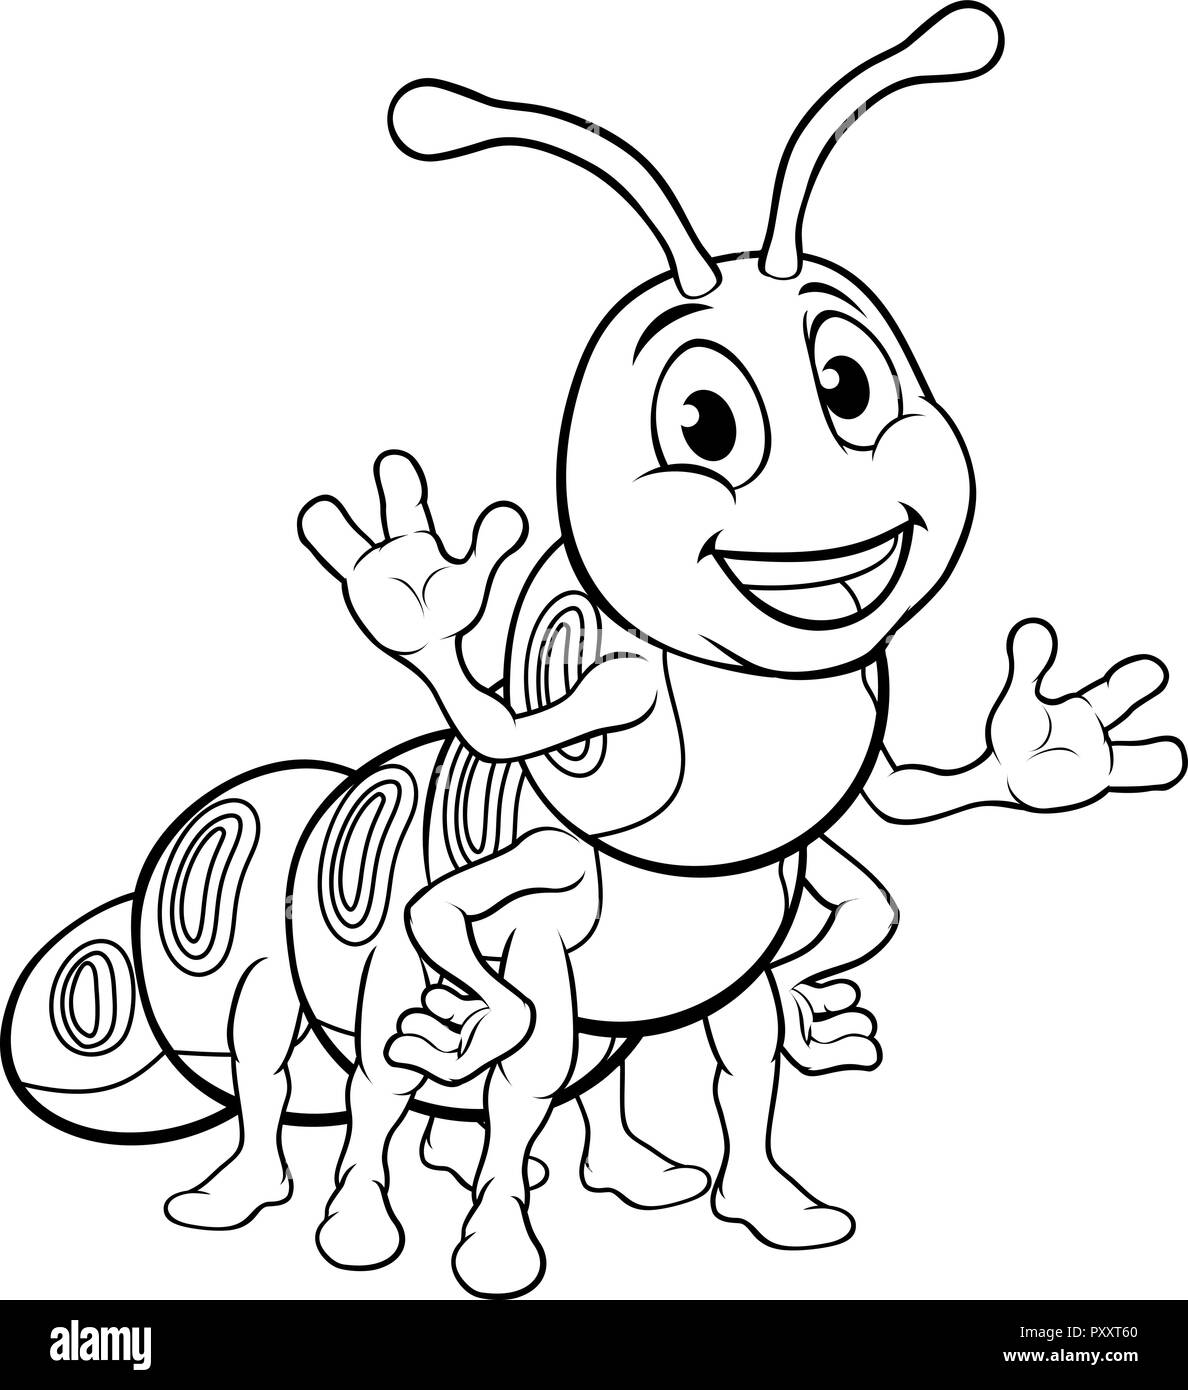 Larva cartoon character Imágenes de stock en blanco y negro - Alamy